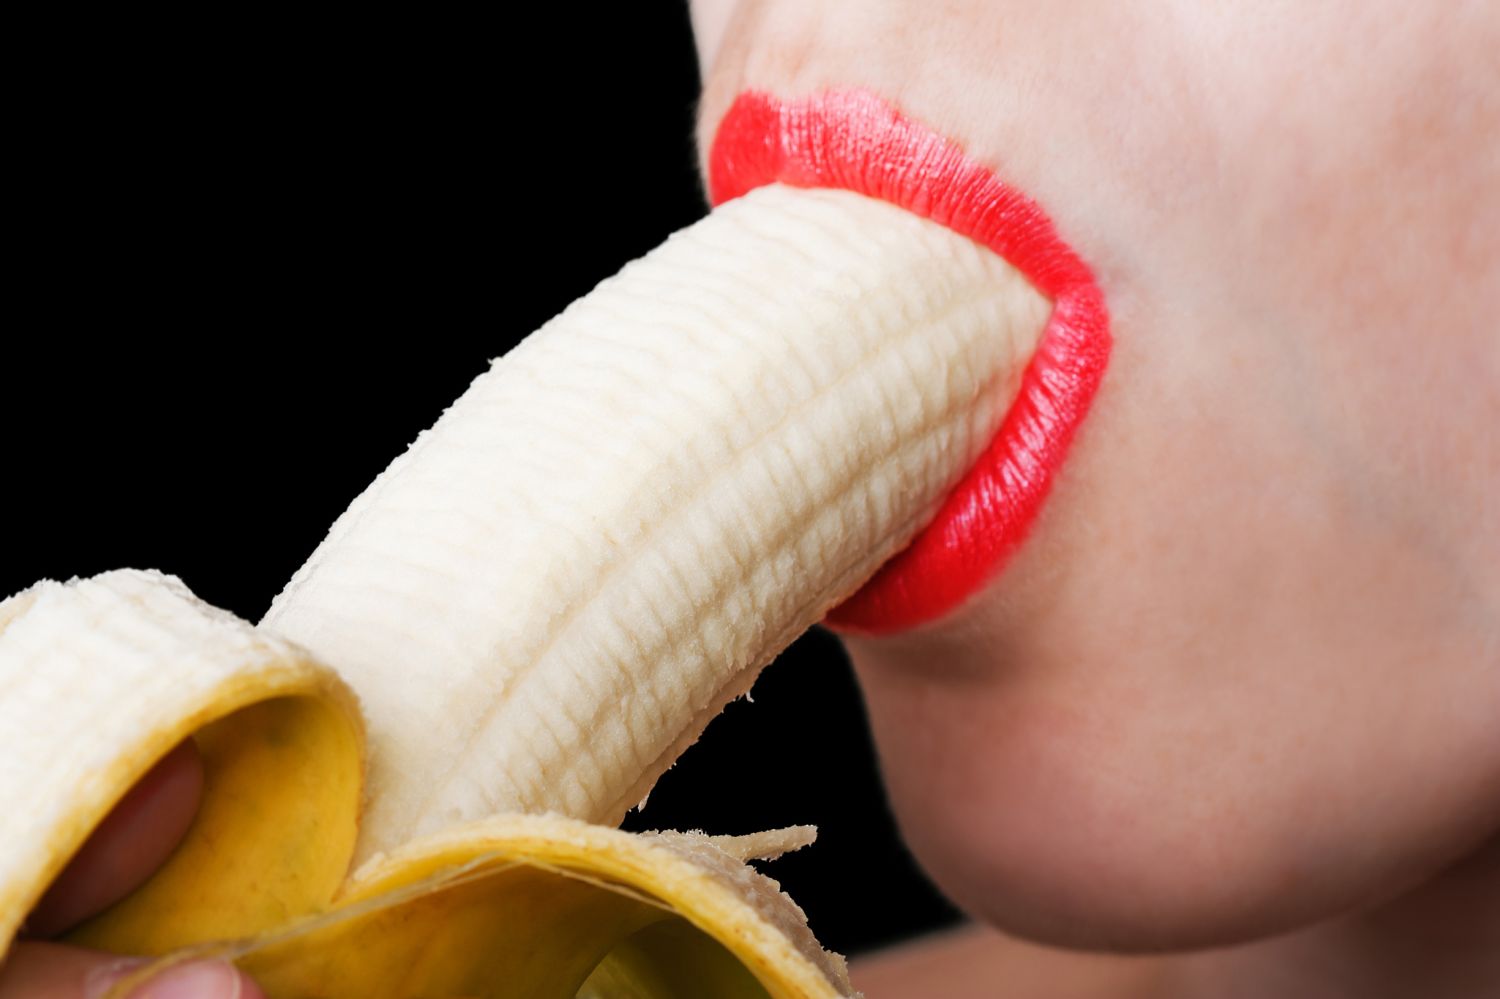 Oral Sex Banana 9